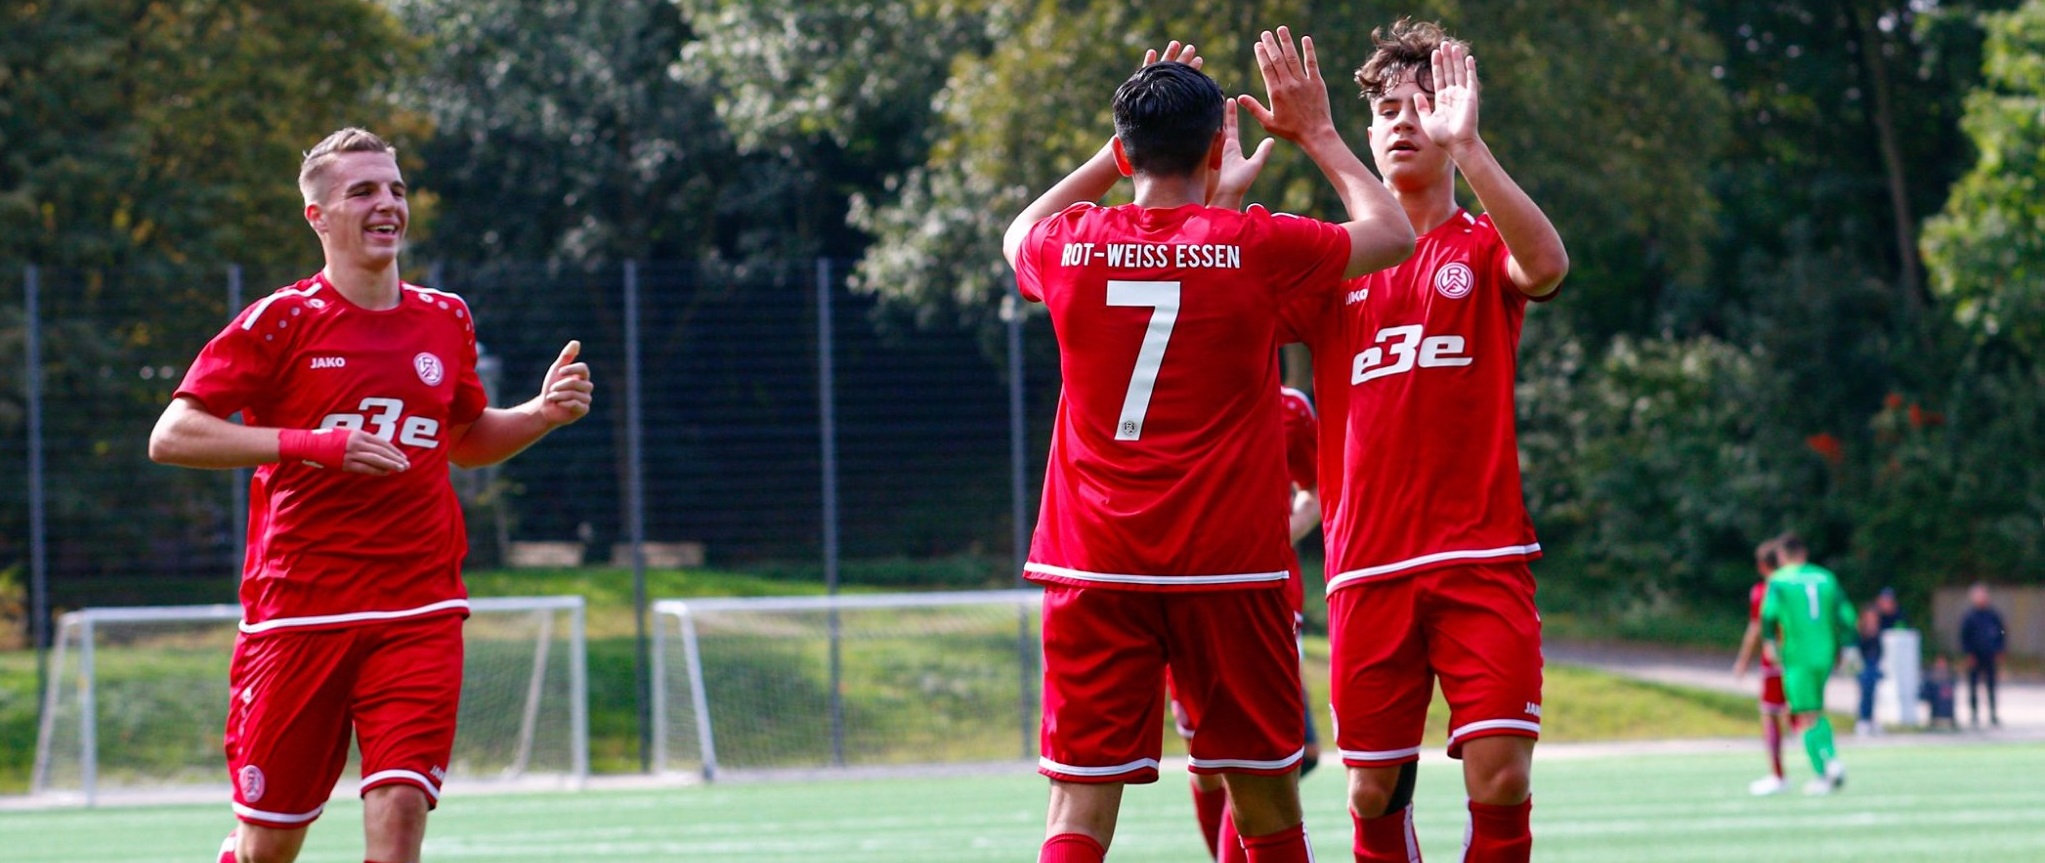 Die U17 ist im Niederrheinpokal in das Viertelfinale eingezogen. (Foto:Breilmannswiese)